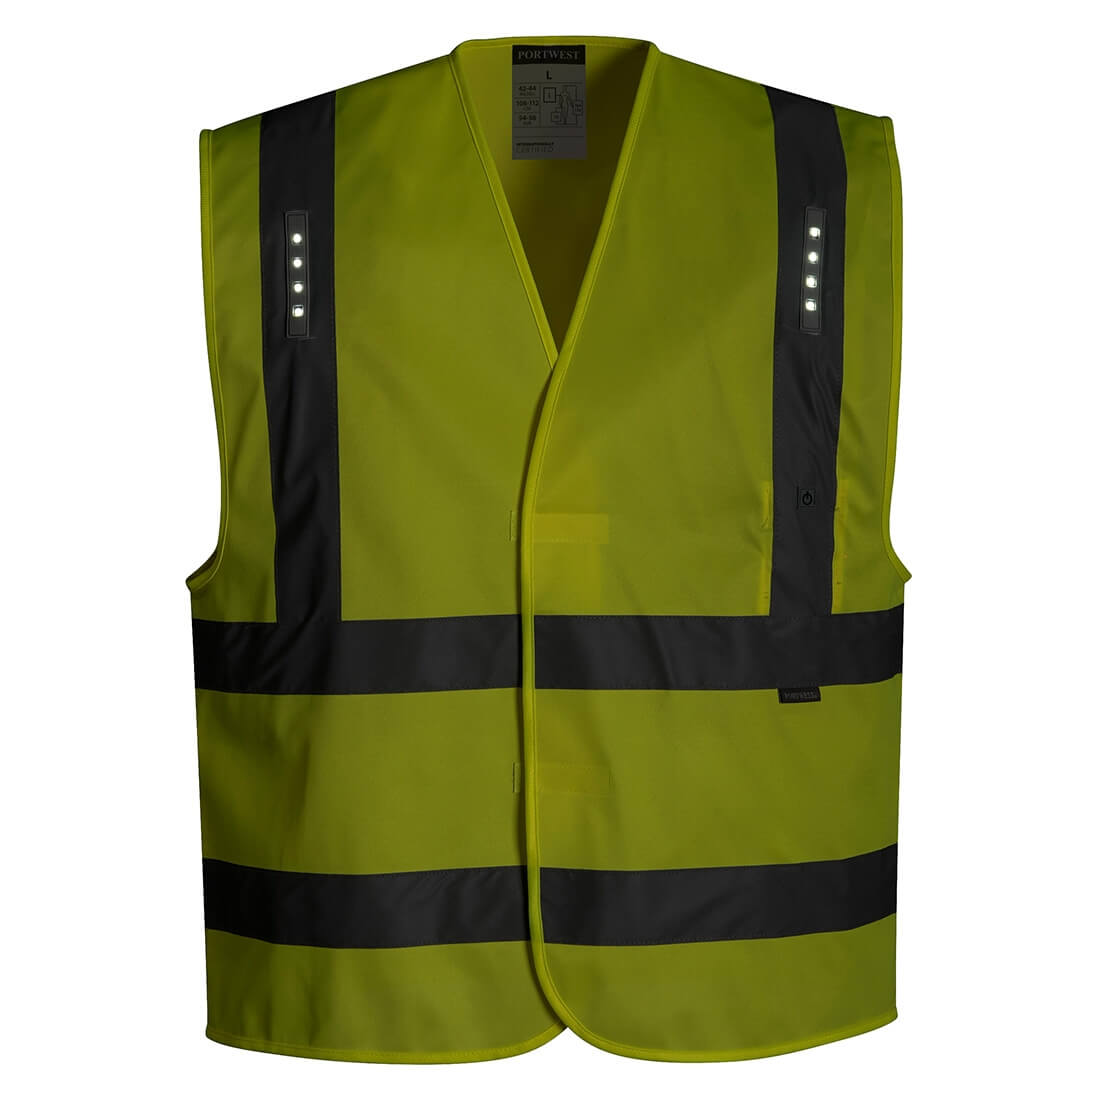 Vega LED Vest - Safetywear